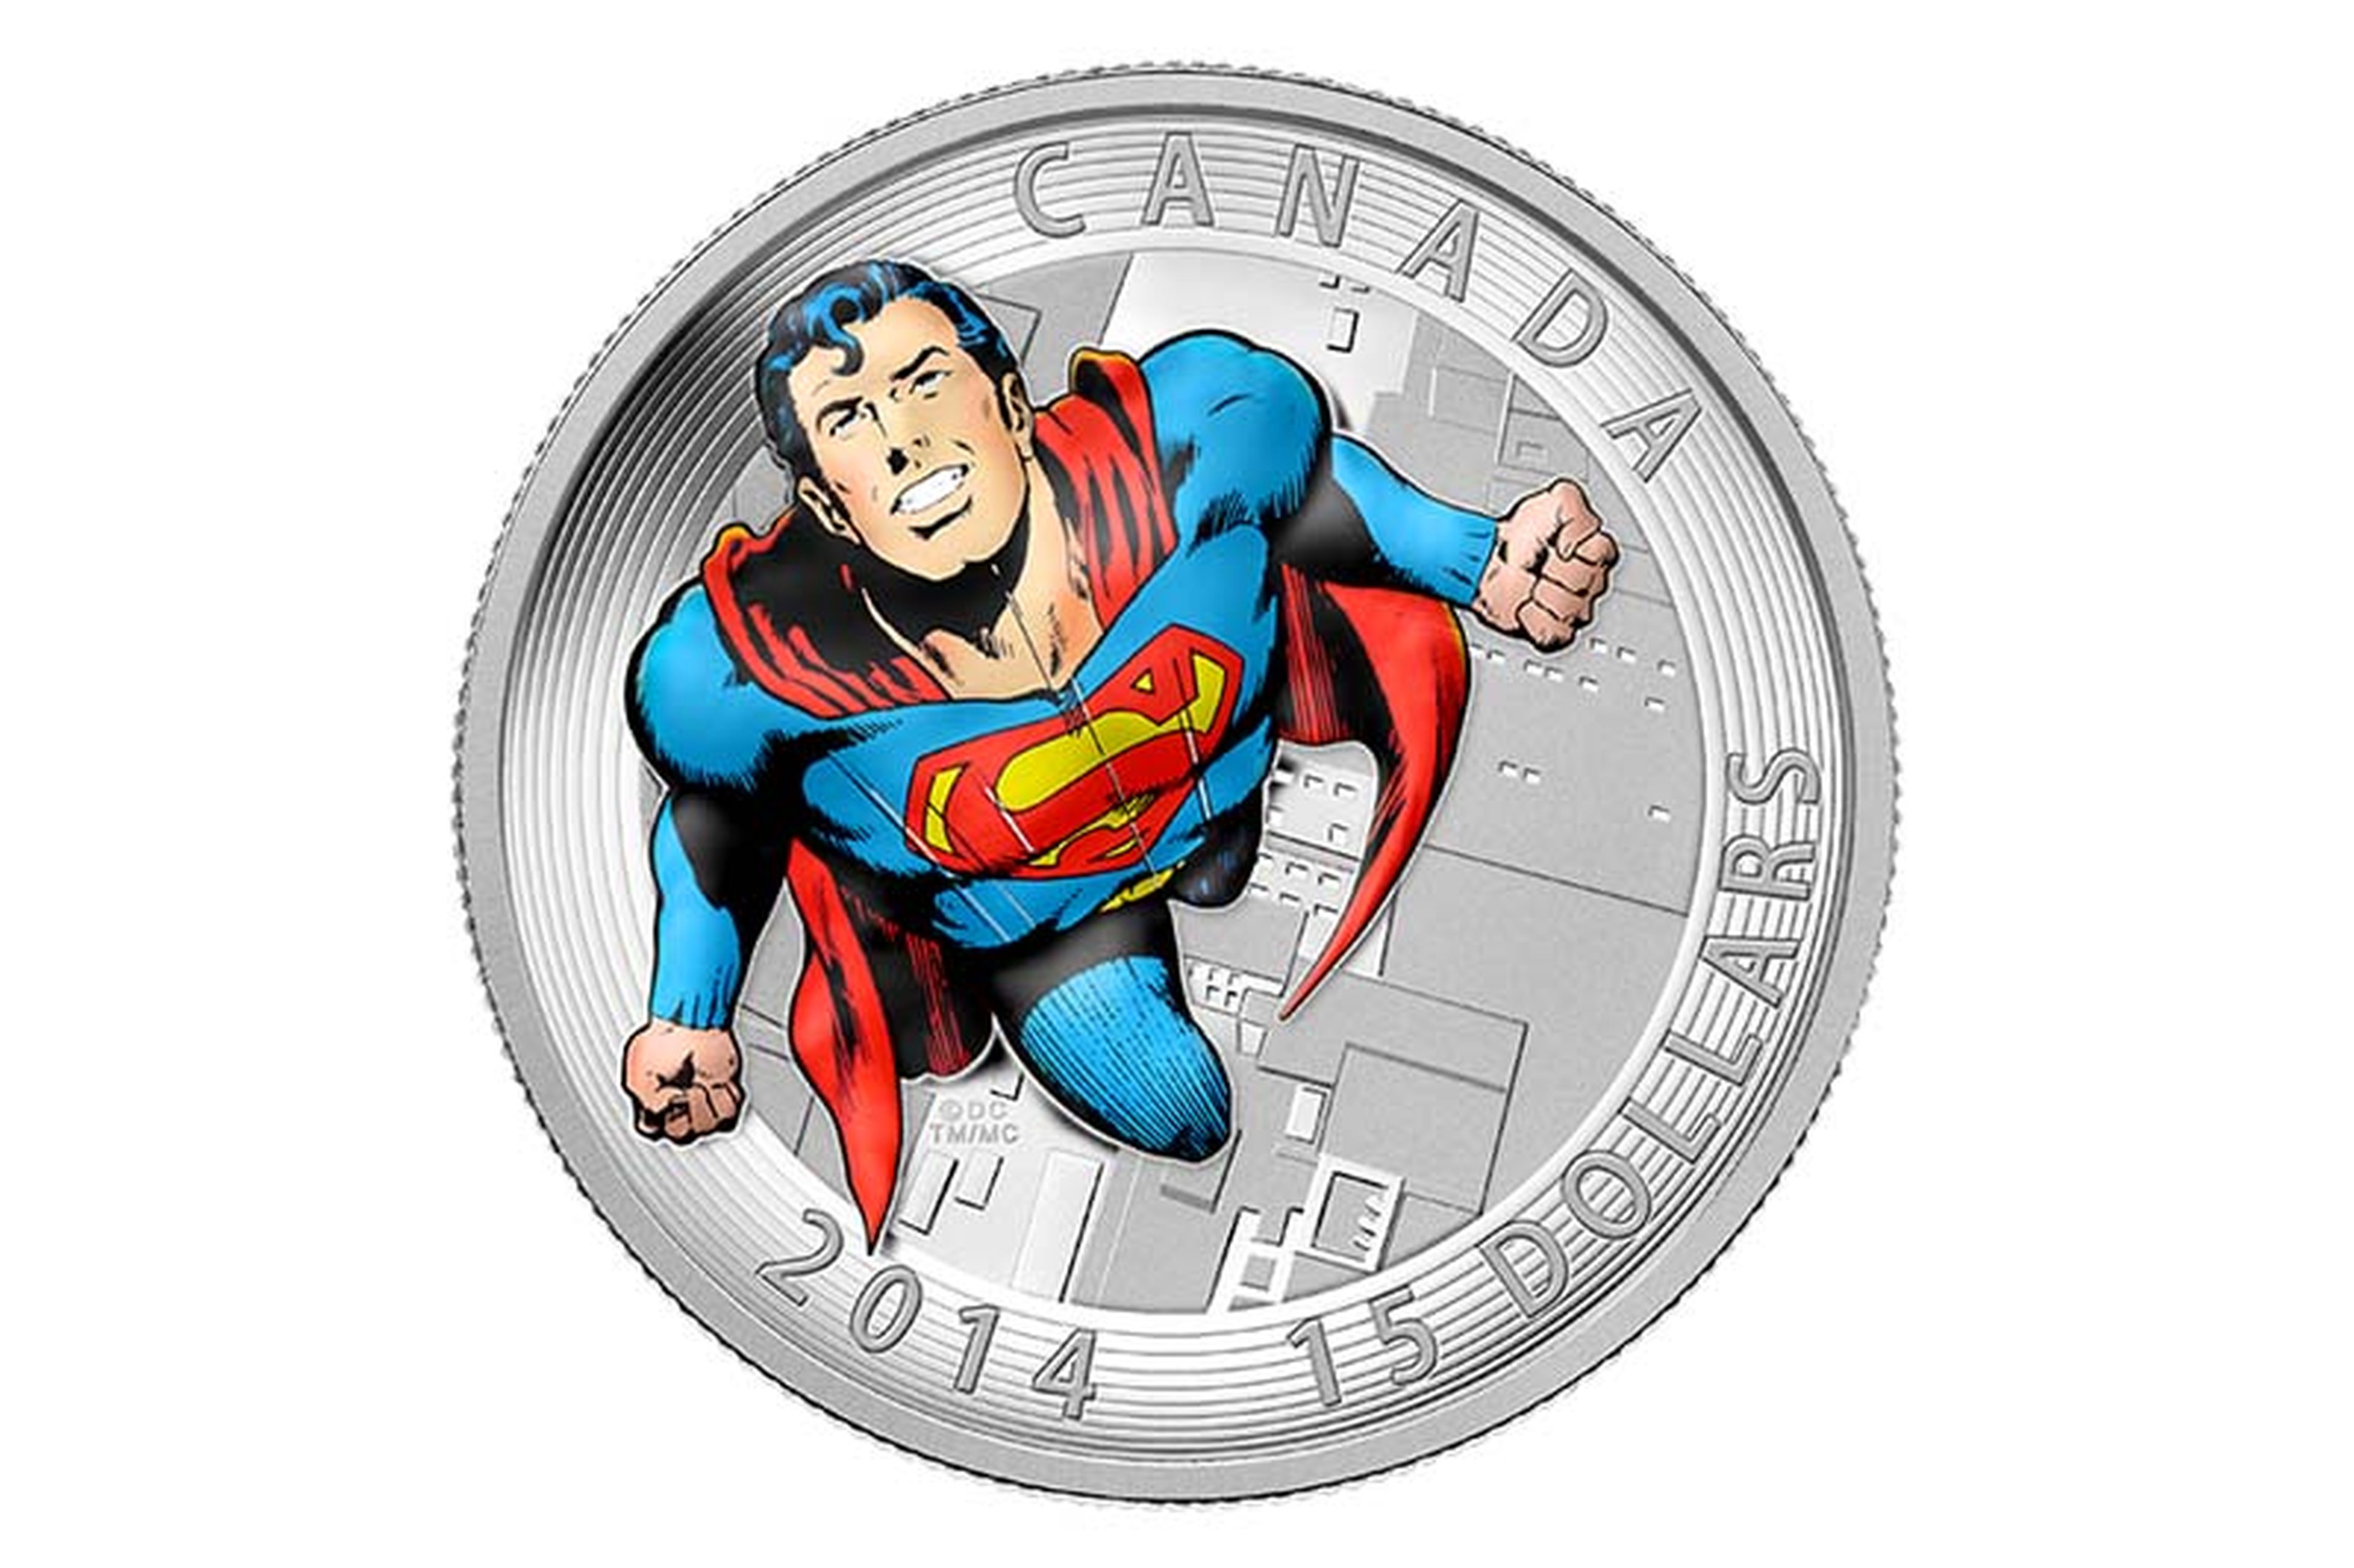 Reprodução/Royal Canadian Mint